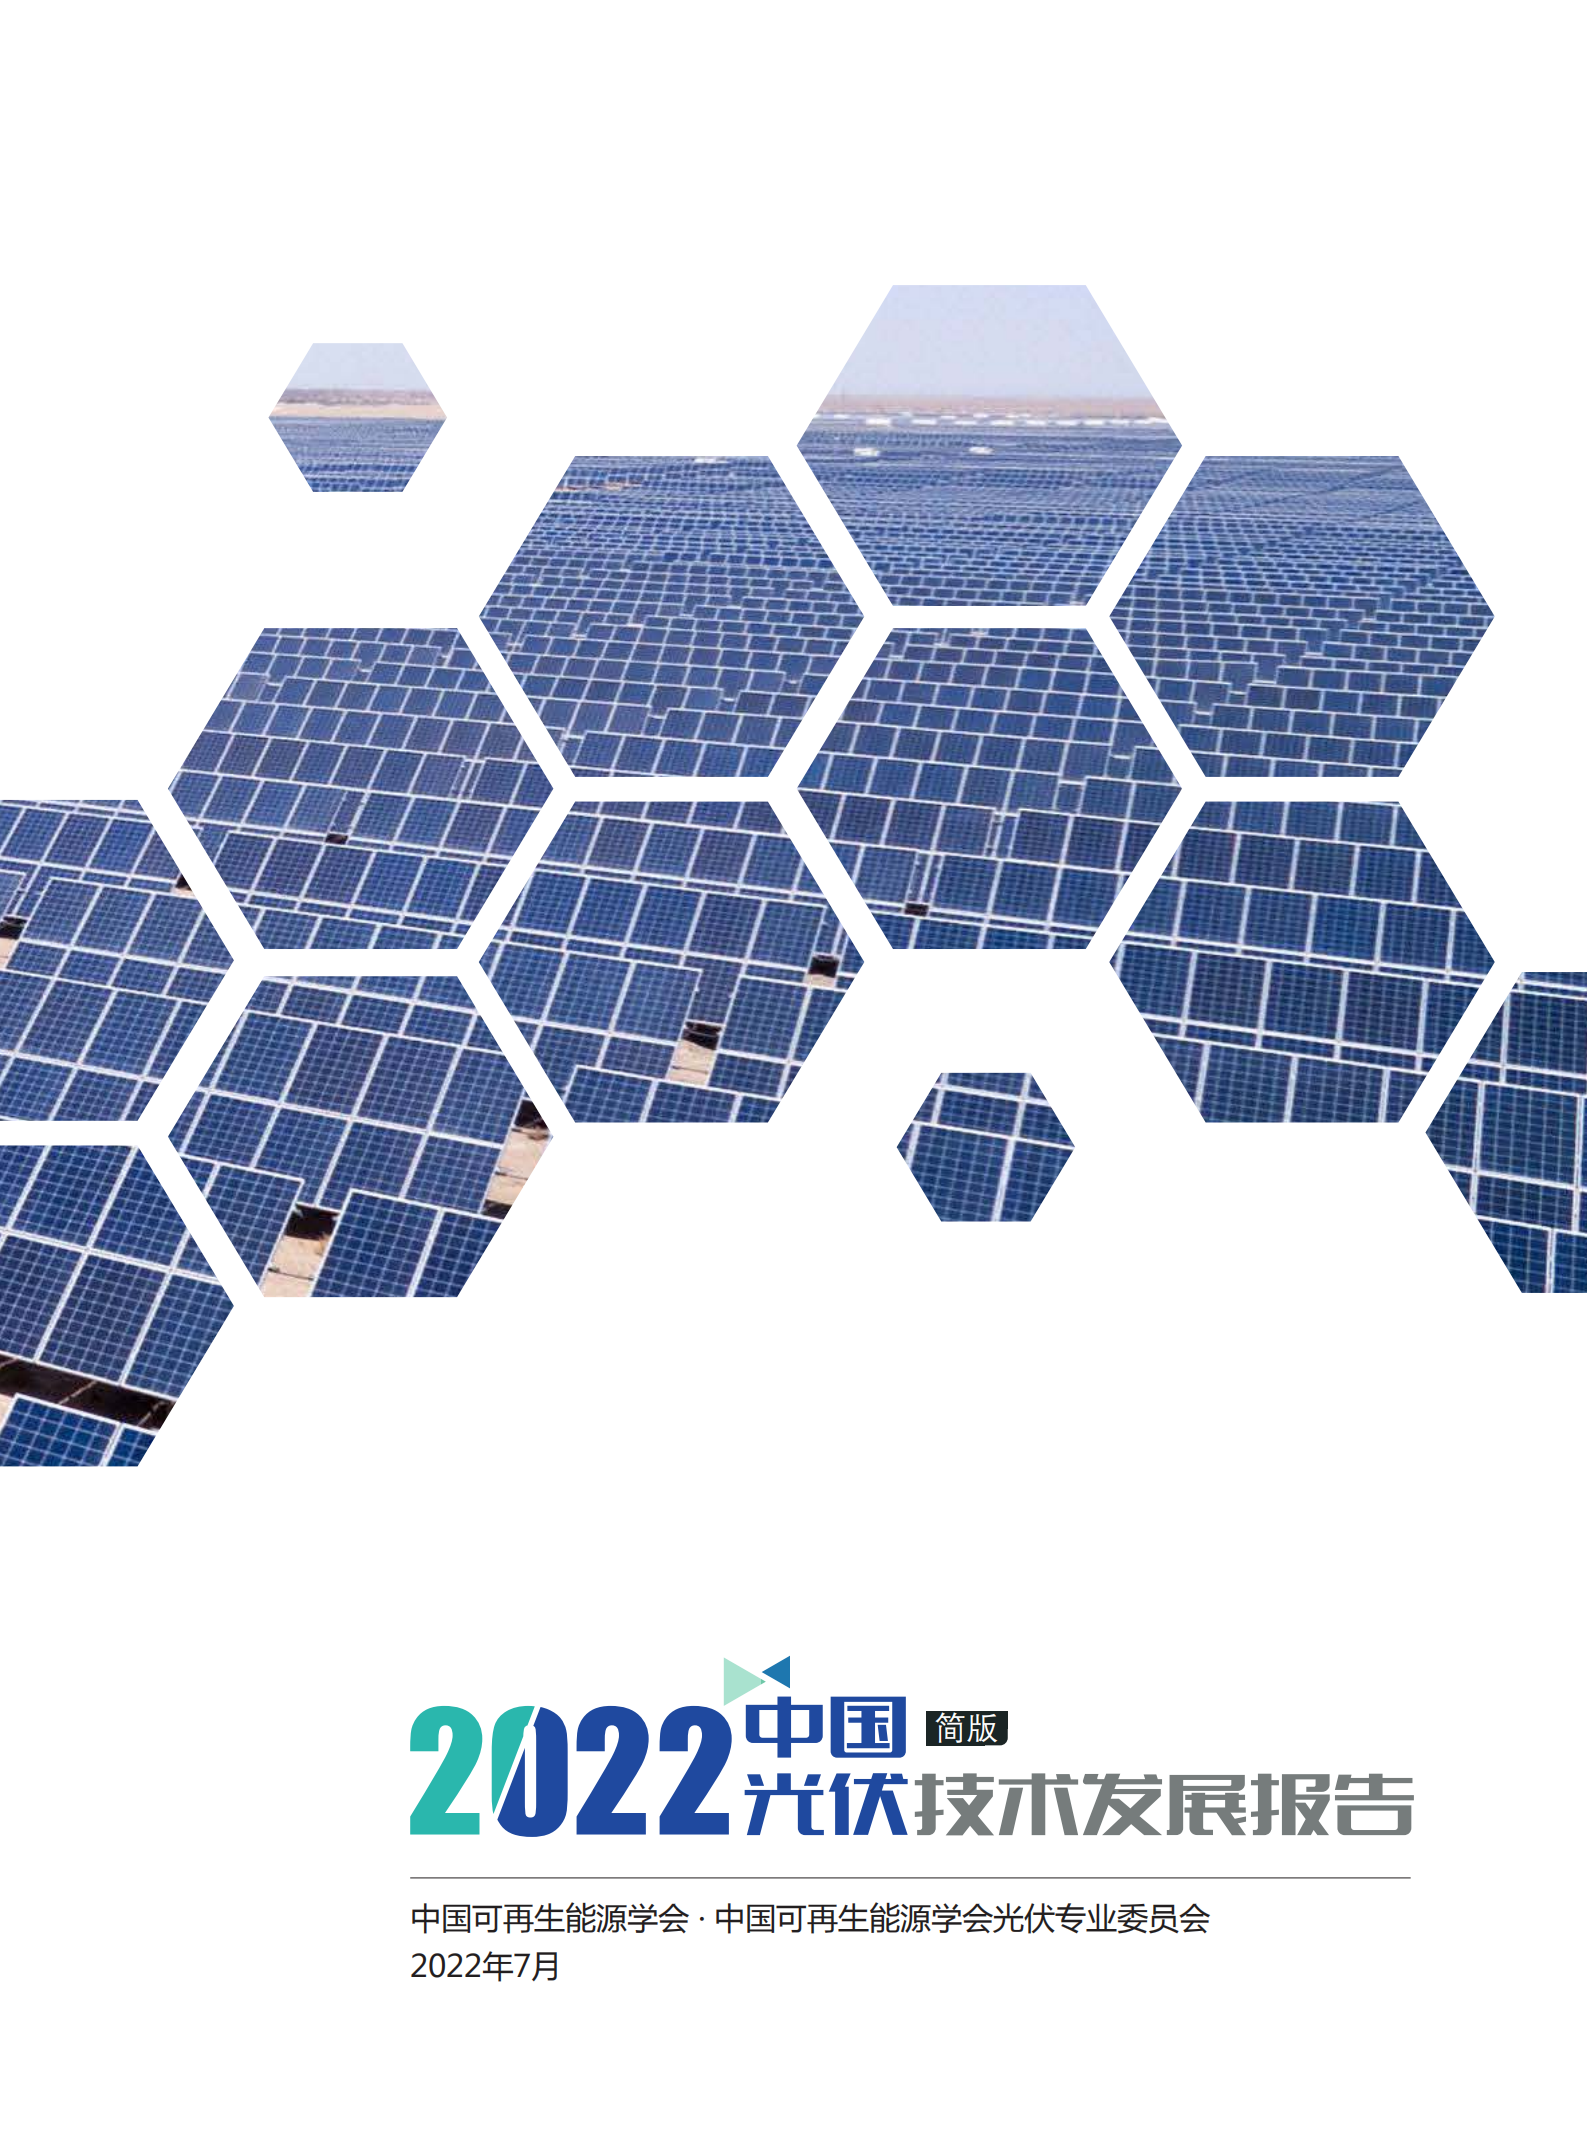 2022年中国光伏技术发展报告简版(1)_00.png